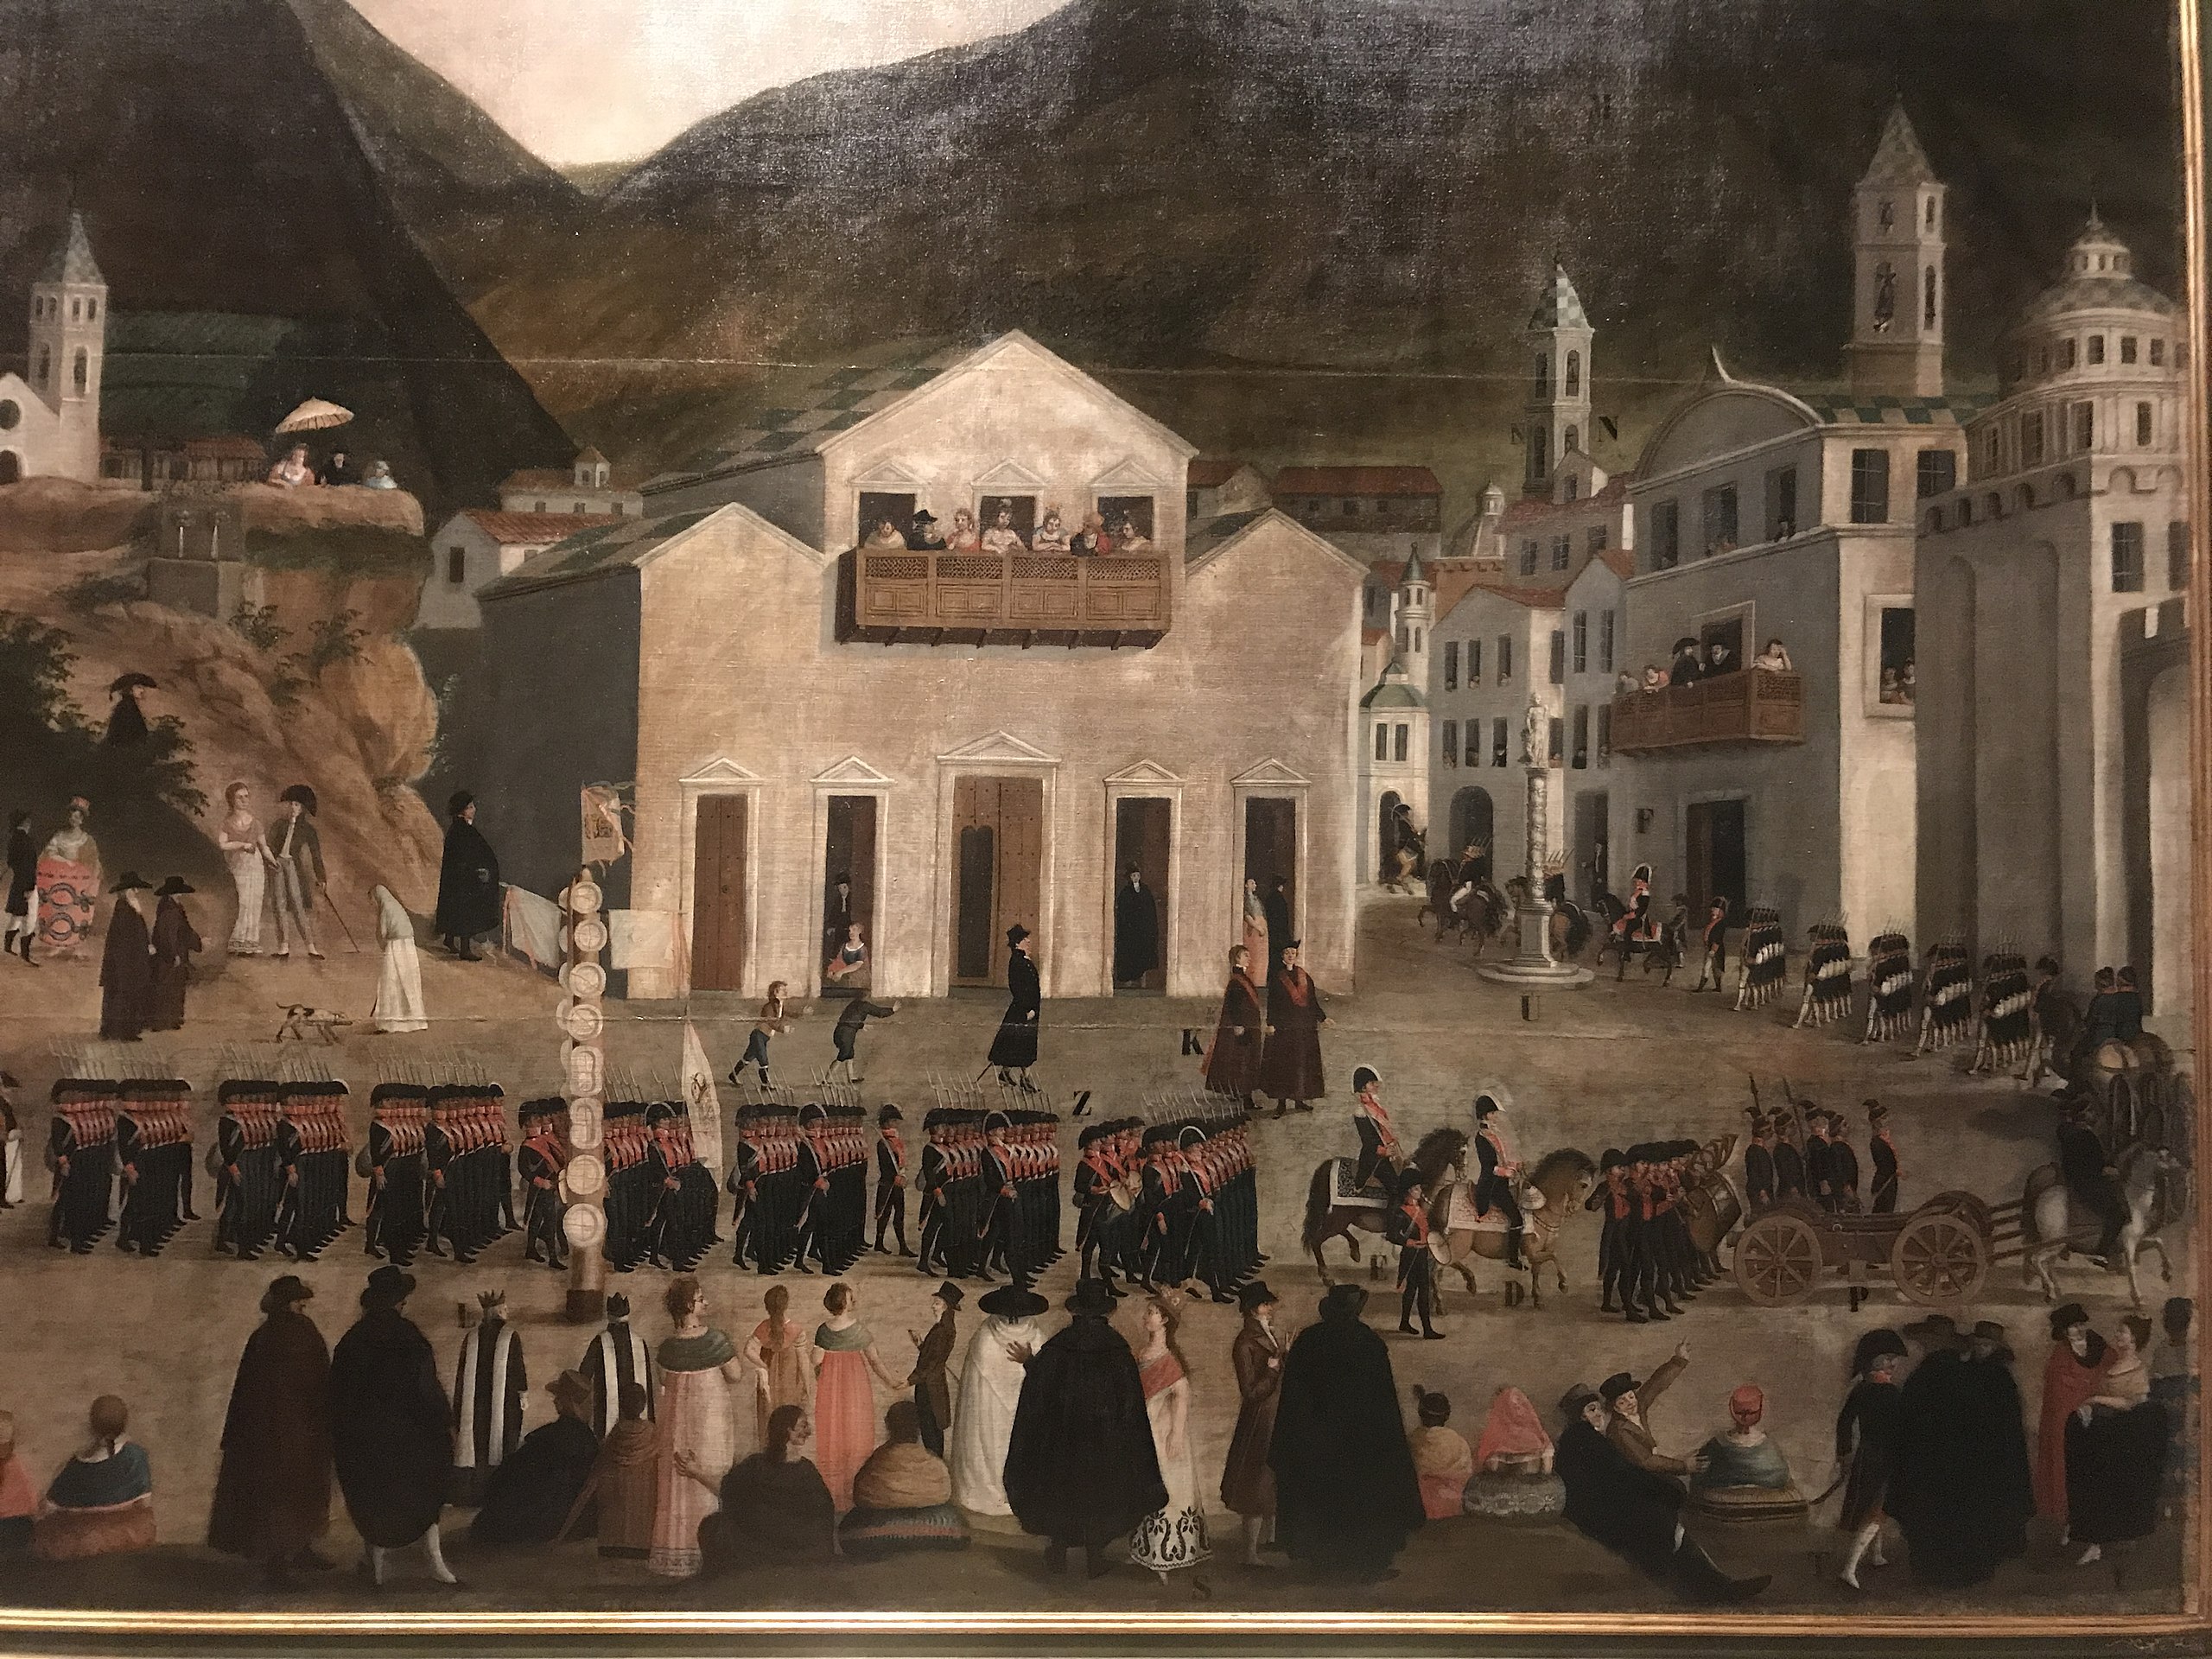 Entrada en la ciudad de Quito del Ejército Real del Perú, enviado por el virrey Fernando de Abascal. La llegada de este importante contingente militar forzó la disolución de la Primera Junta de Gobierno Autónoma de Quito, el 24 de octubre de 1809.